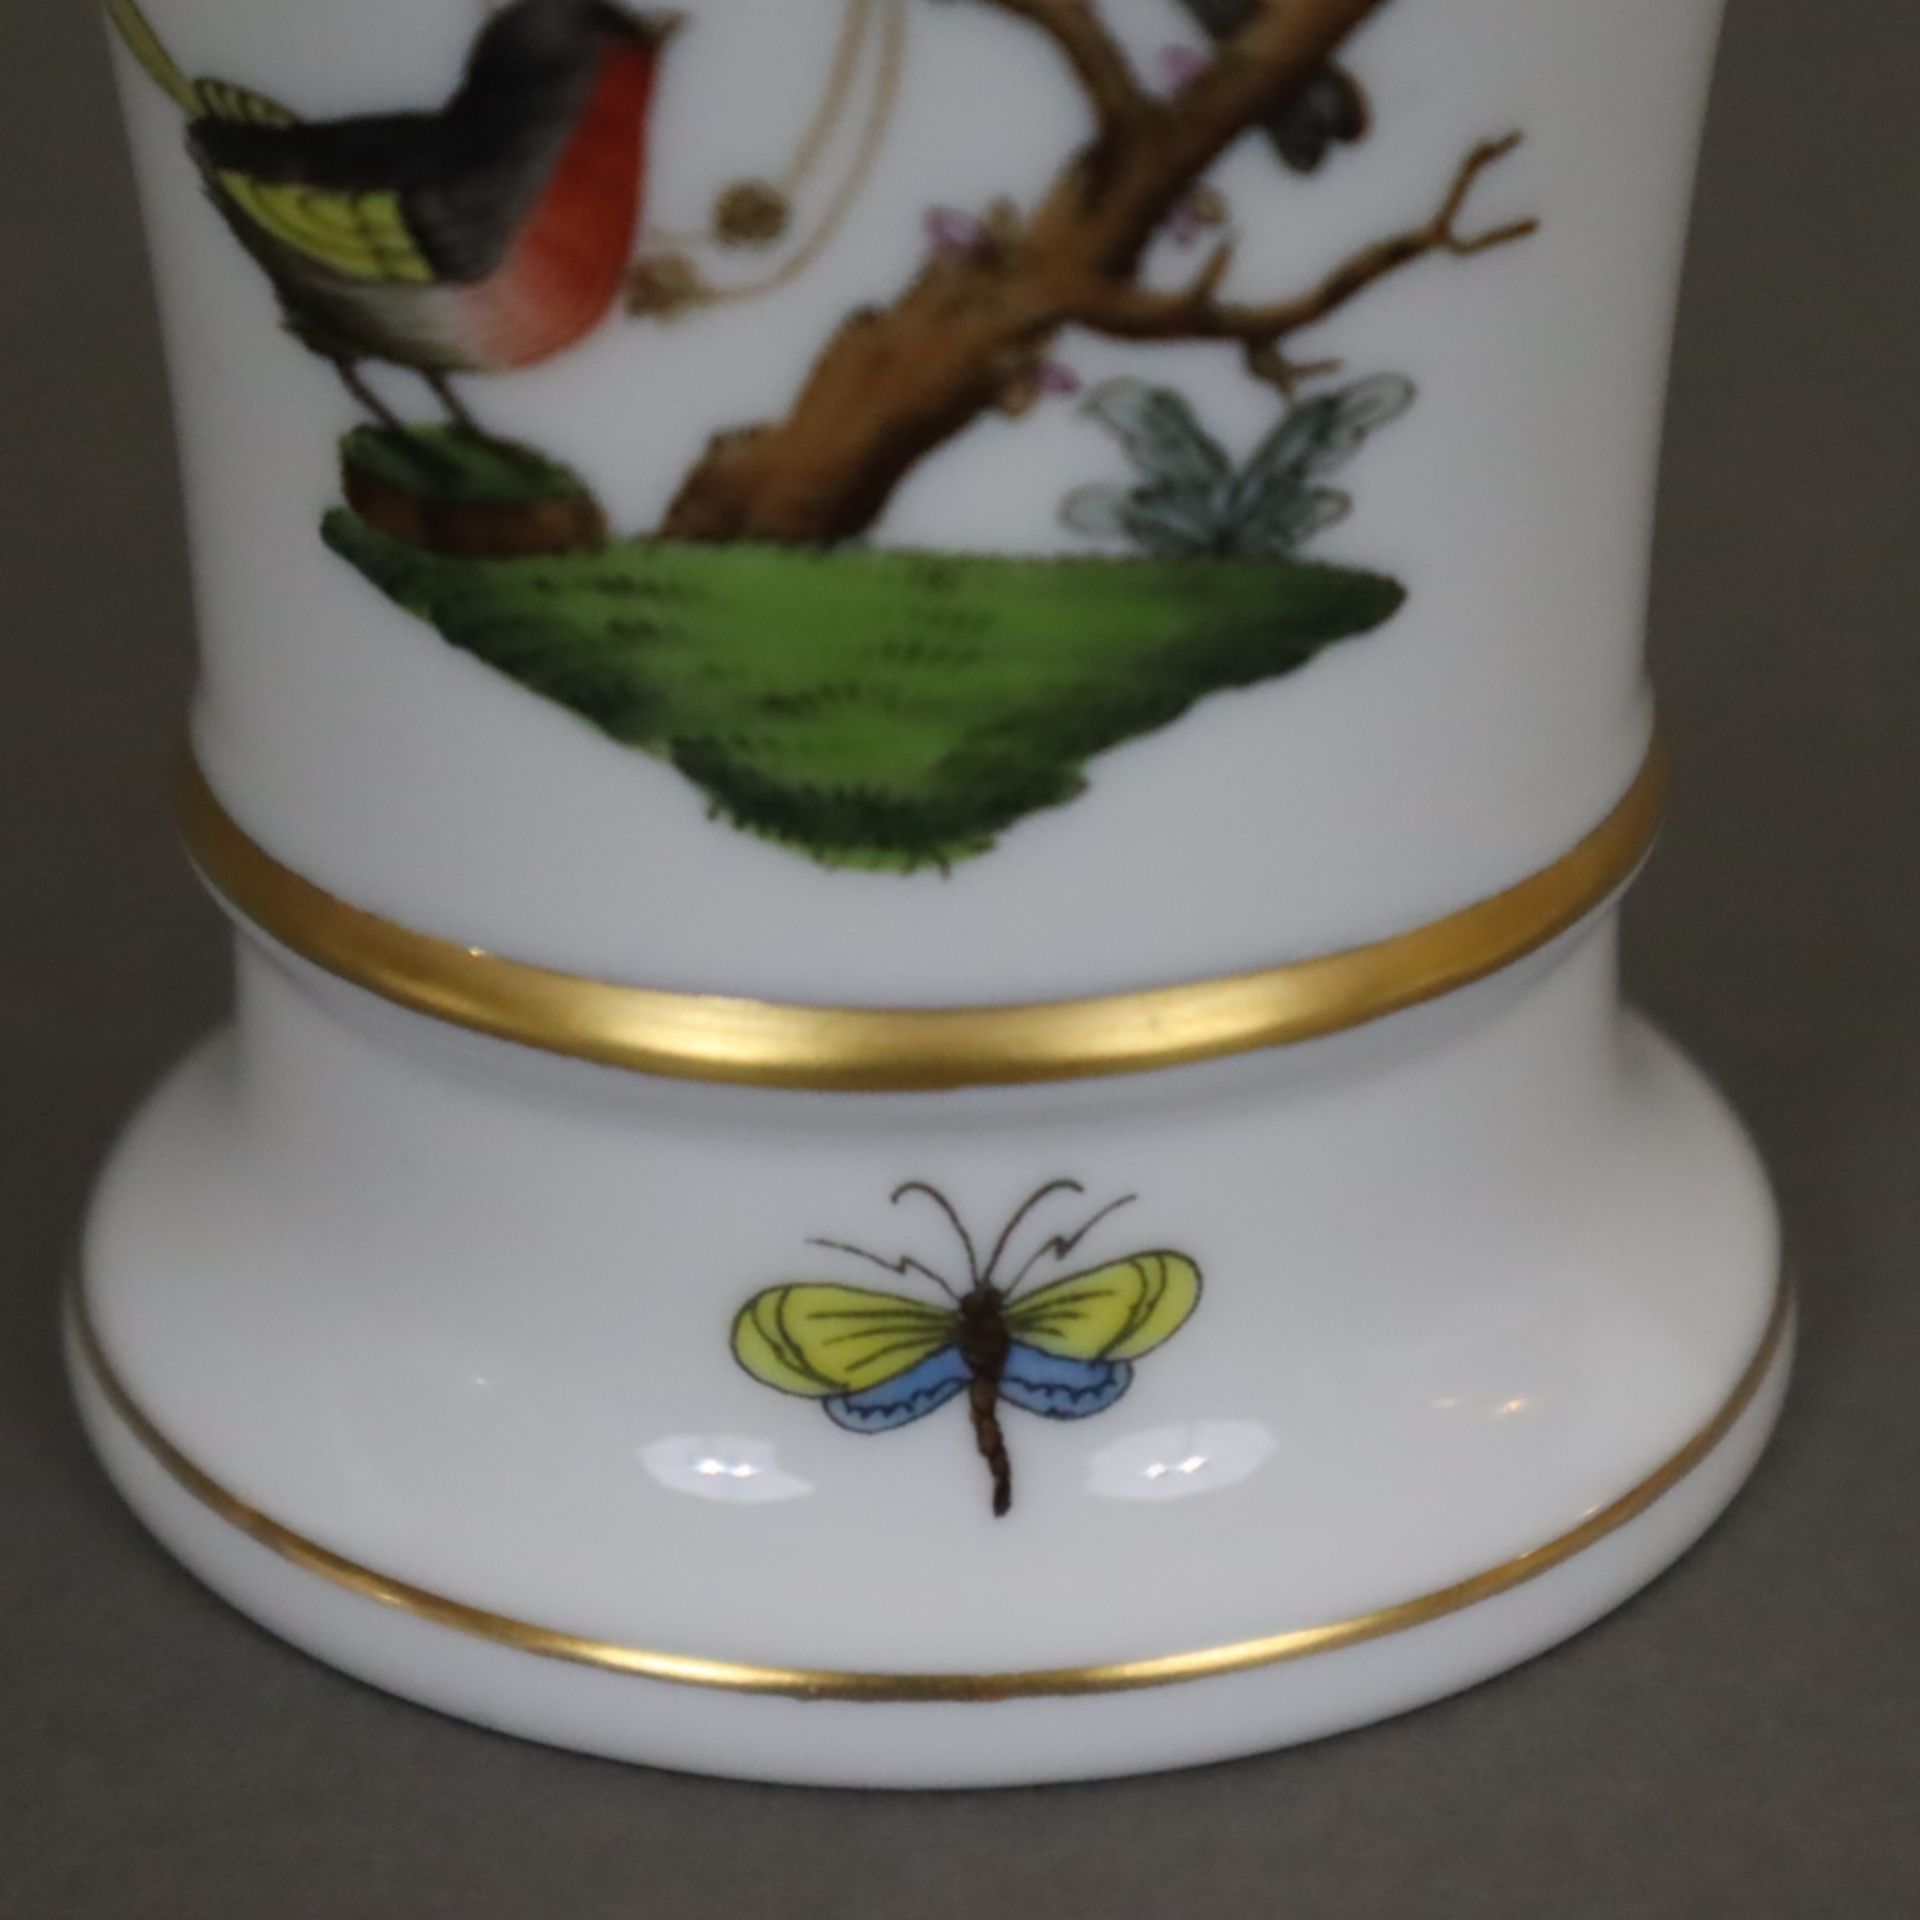 Kleine Trichtervase - Herend, Ungarn, Porzellan, Dekor "Rothschild", polychrome Malerei mit Vogel-u - Bild 3 aus 5